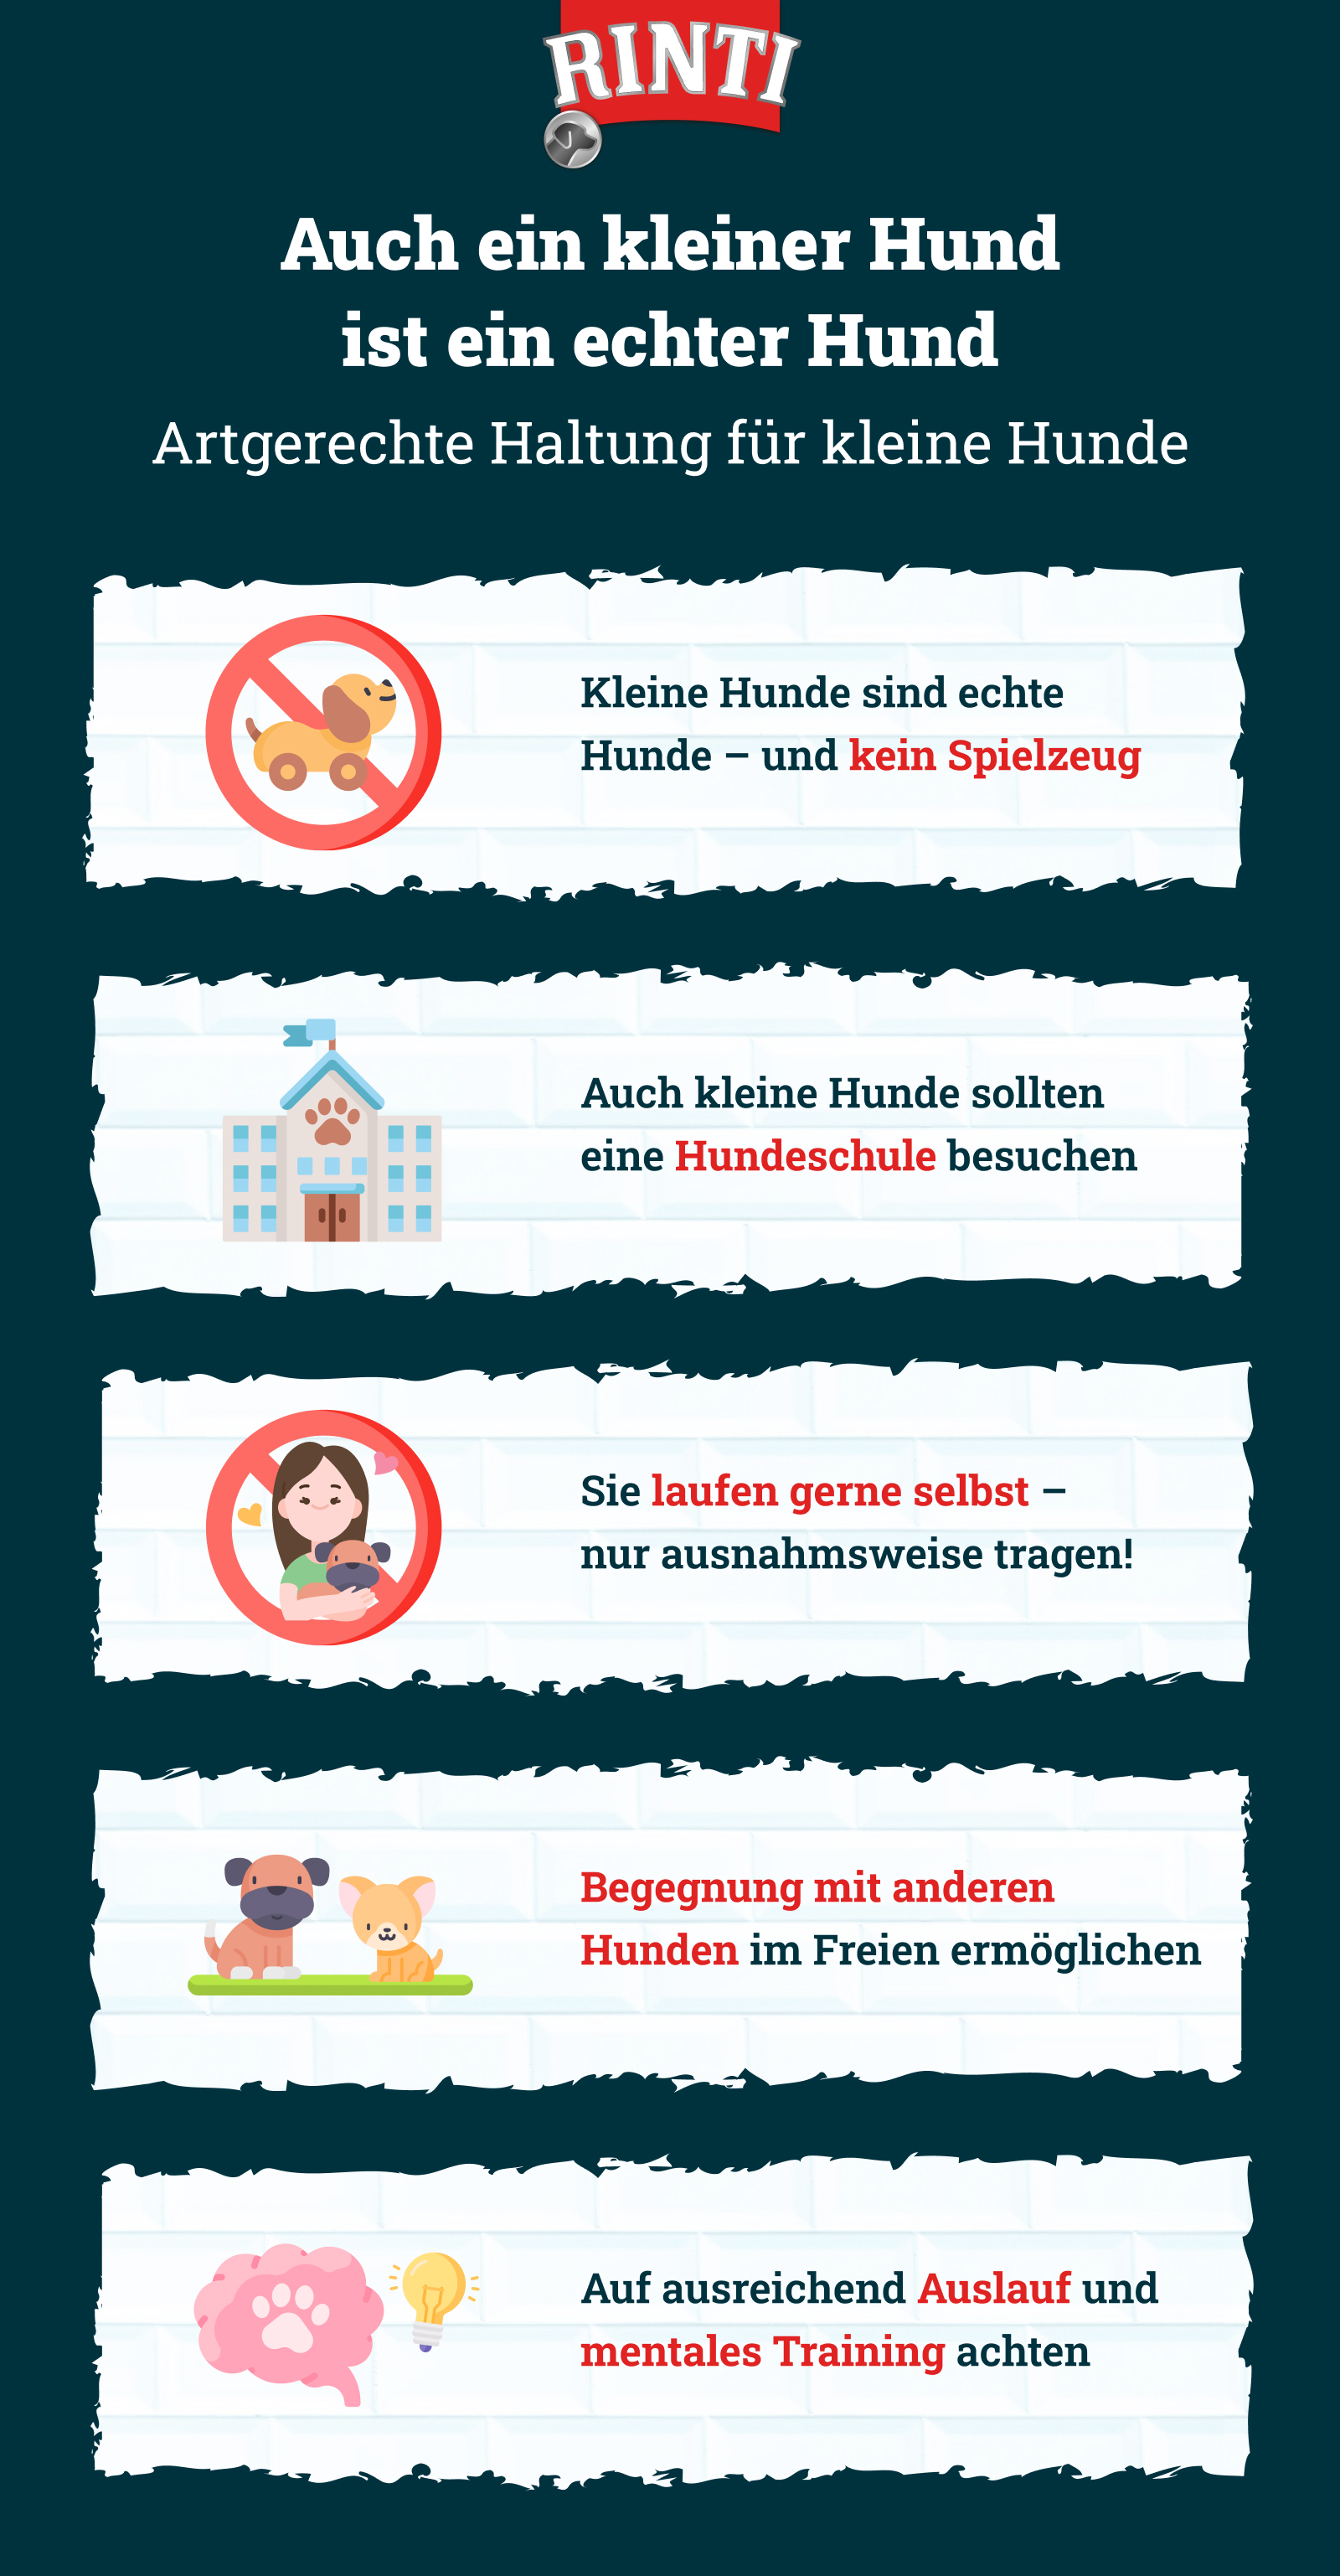 Infografik von Rinti zum Thema kleine Hunde erziehen